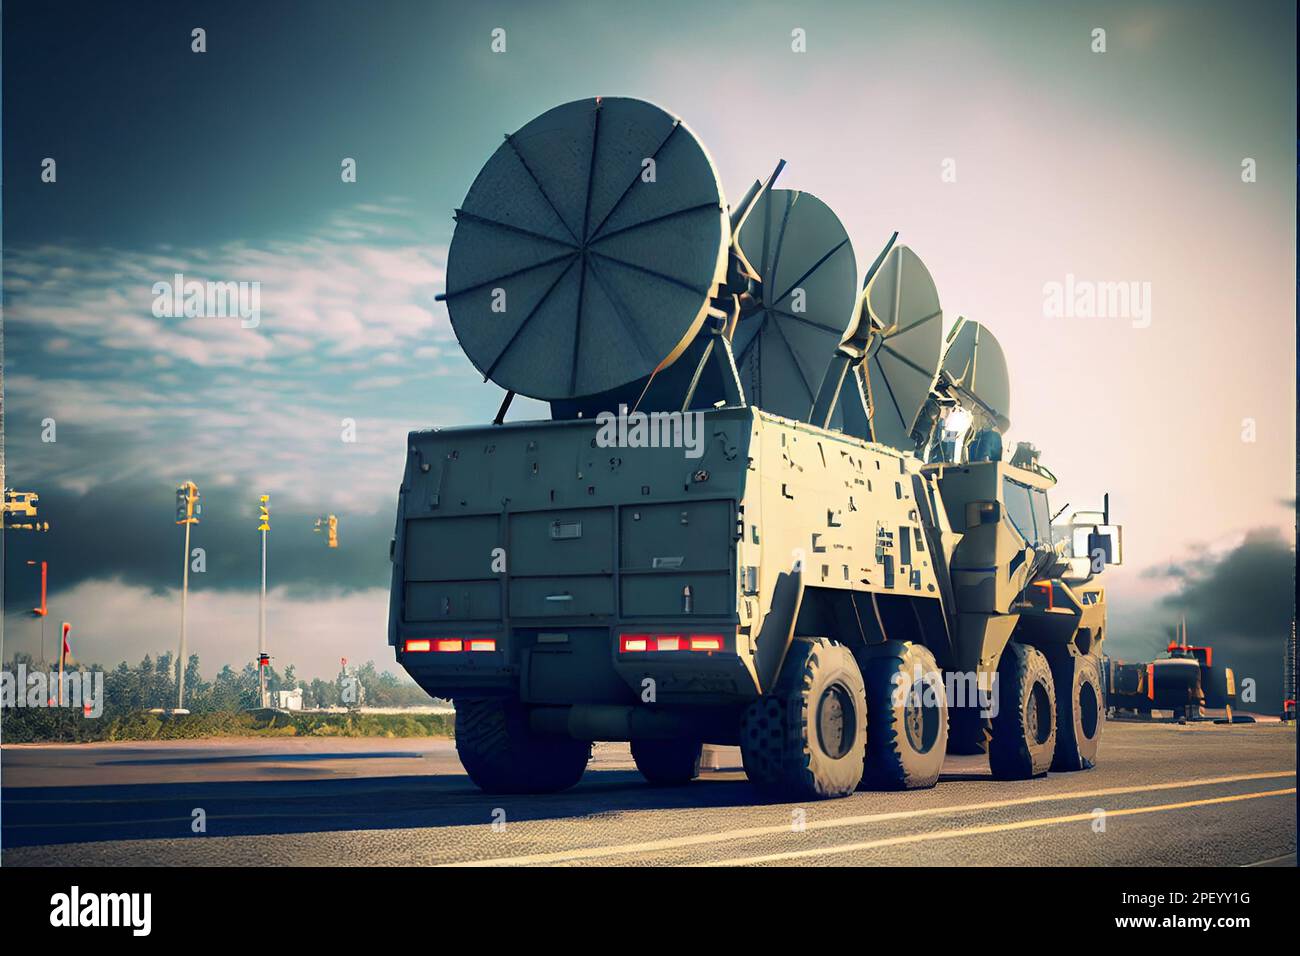 Luftabwehrradars militärischer mobiler Flugabwehrsysteme in grüner Farbe und ballistischer Raketenwerfer mit vier Marschflugkörpern in der Mitte des Rahmens, Stockfoto